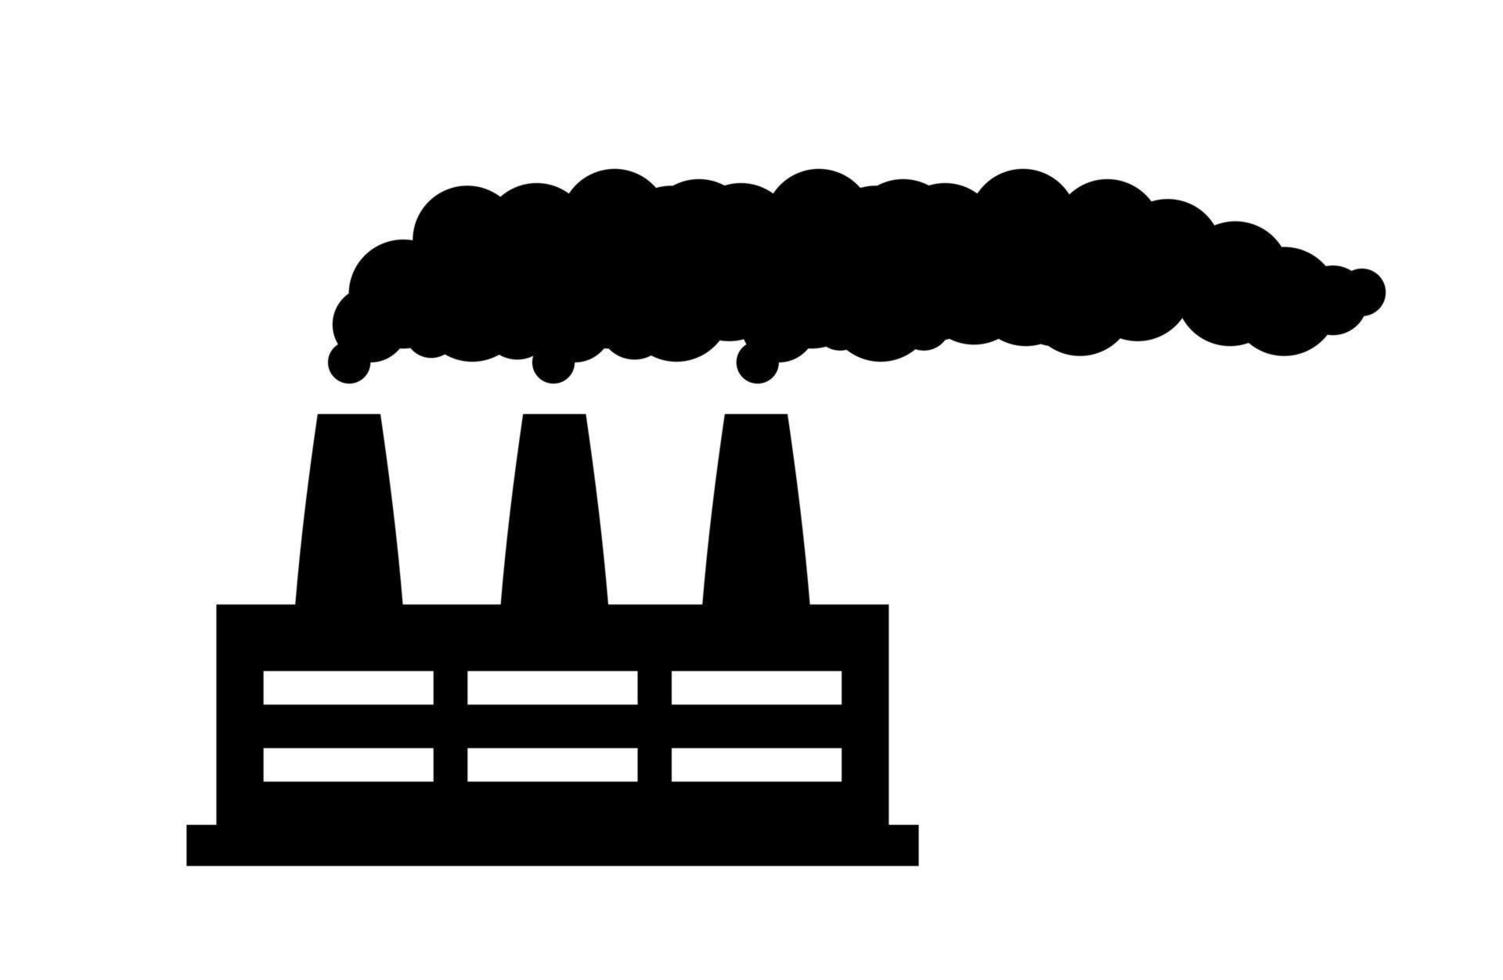 rökning industriell komplex fabrik ikon. smutsig produktion förstöra ekologi med luft förorening och kraftfull toxisk utsläpp in i vektor atmosfär